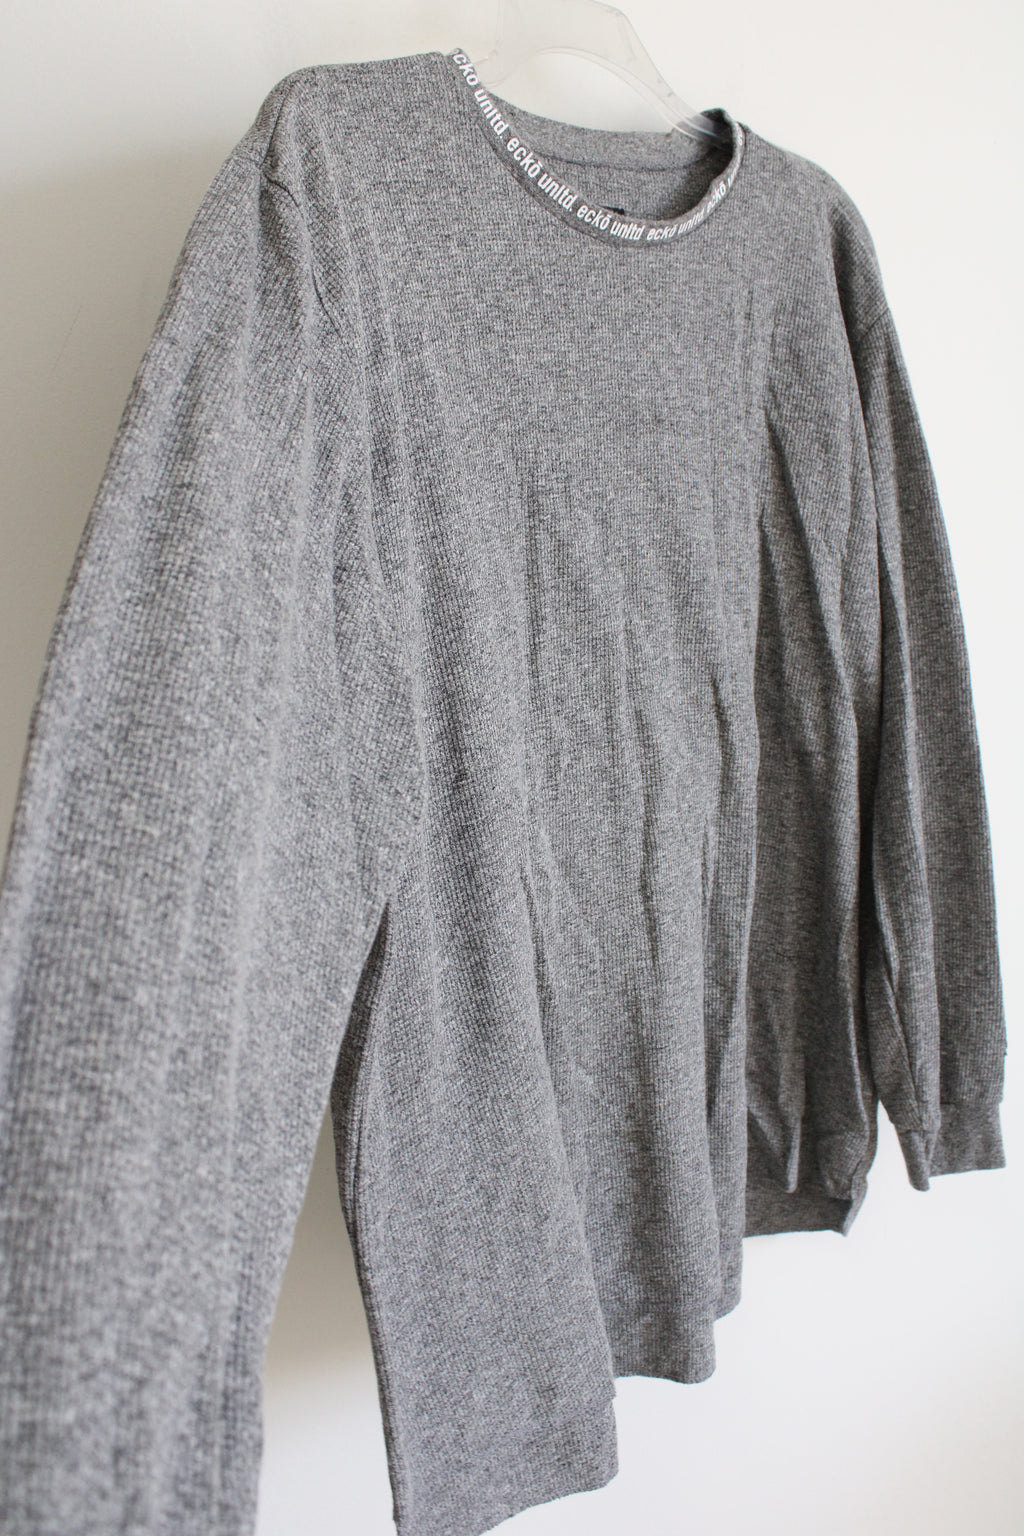 Ecko Unltd. Gray Long Sleeved Shirt | 5XL